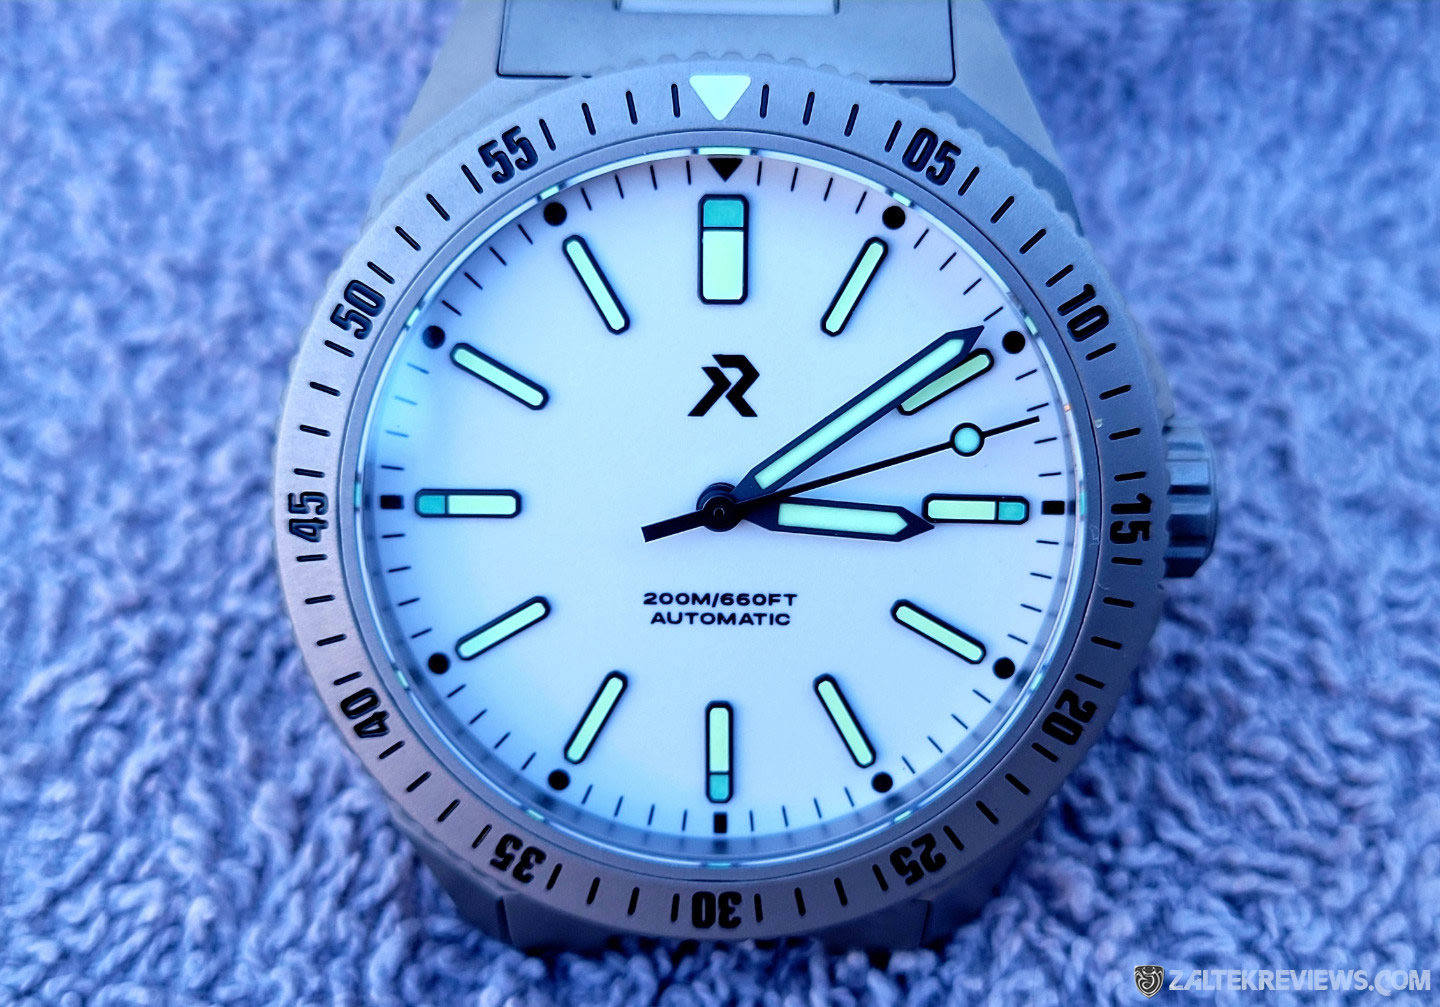 RZE Endeavour Titanium Dive Watch Review